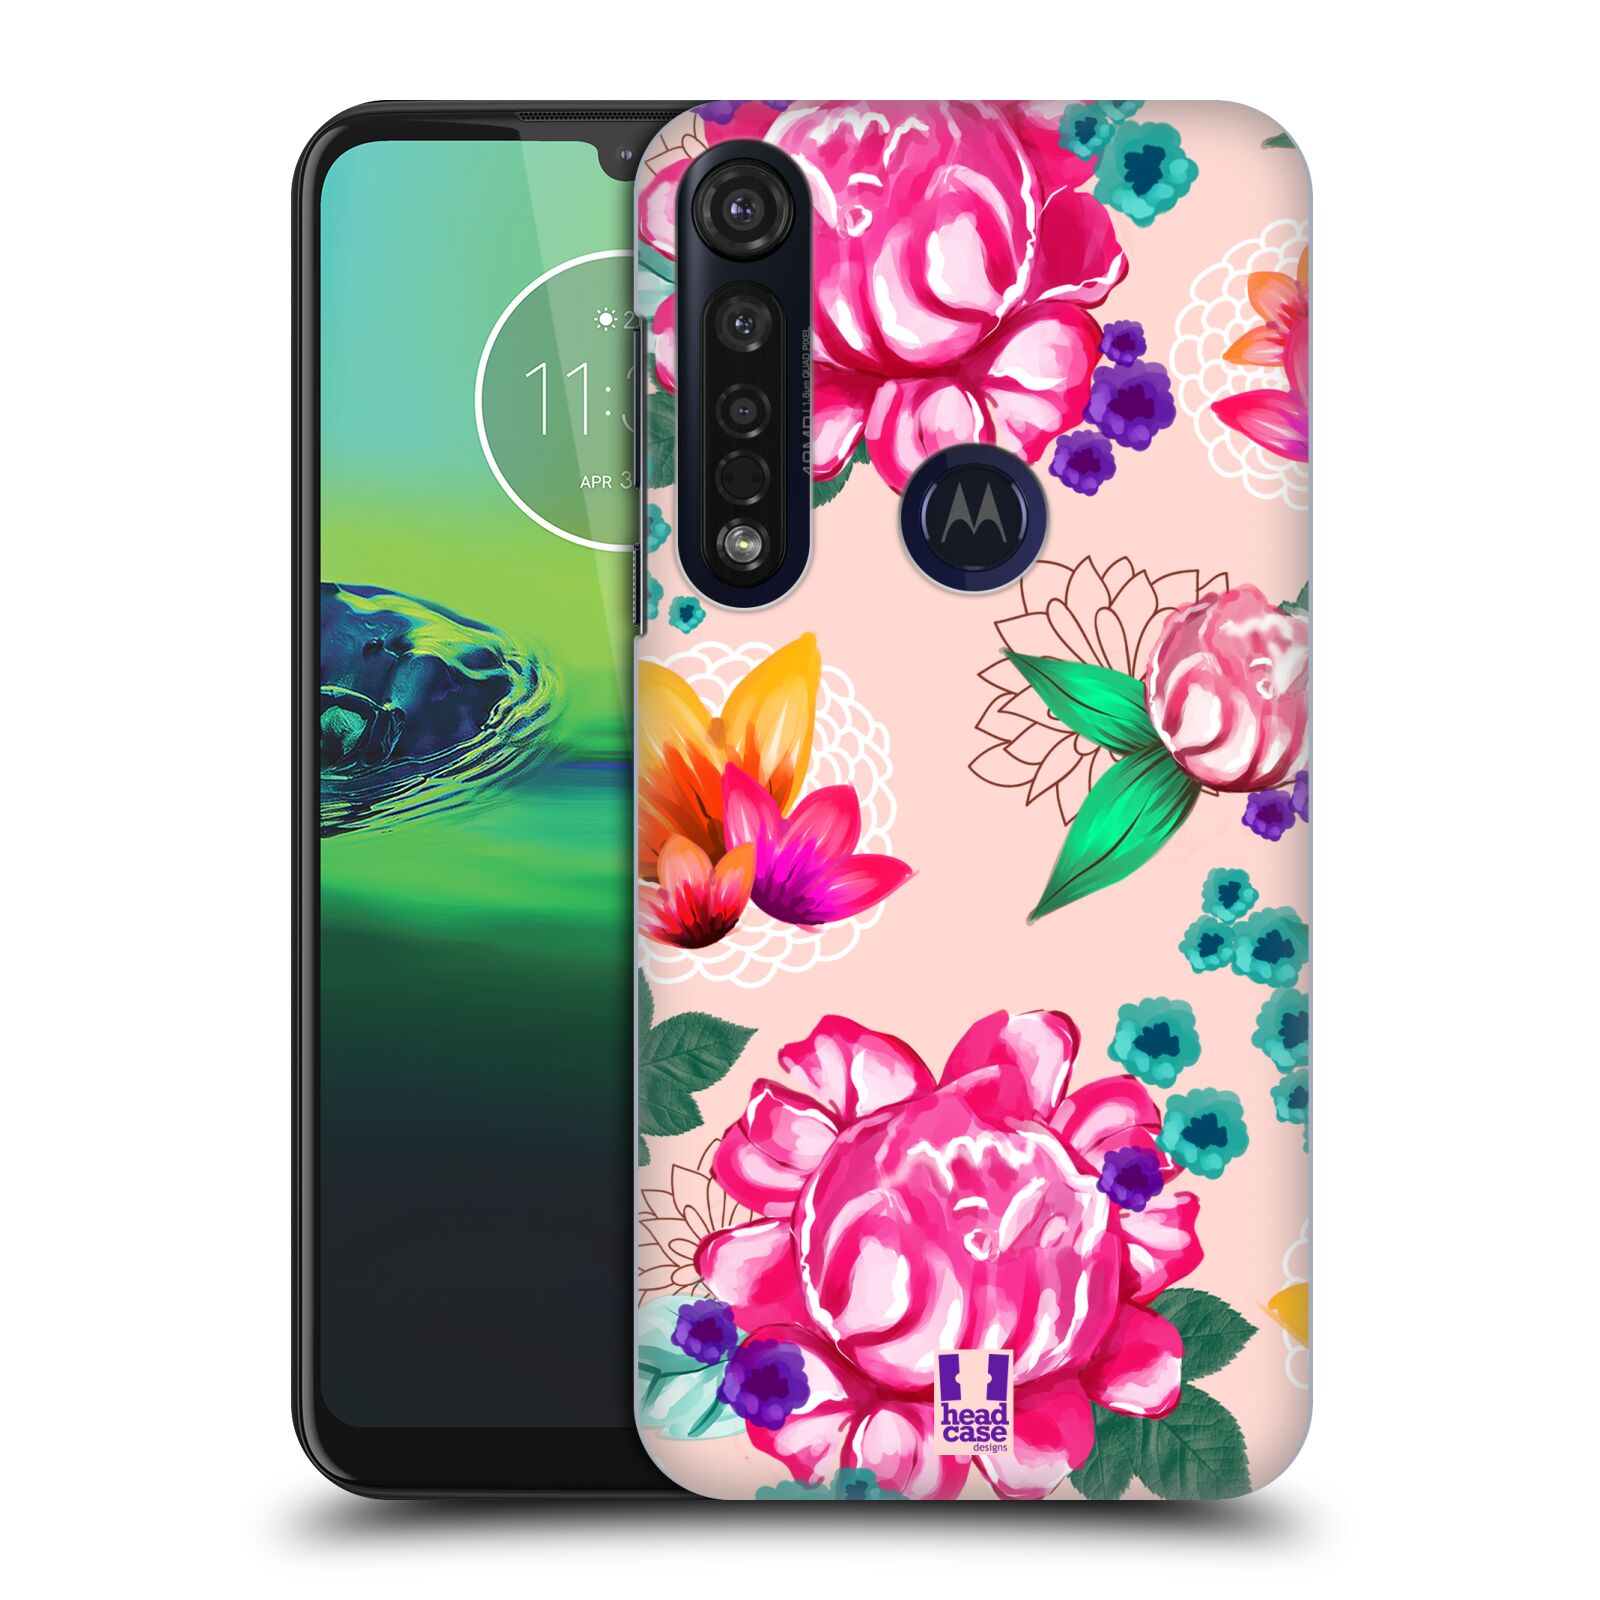 Pouzdro na mobil Motorola Moto G8 PLUS - HEAD CASE - vzor Malované květiny barevné SVĚTLE RŮŽOVÁ